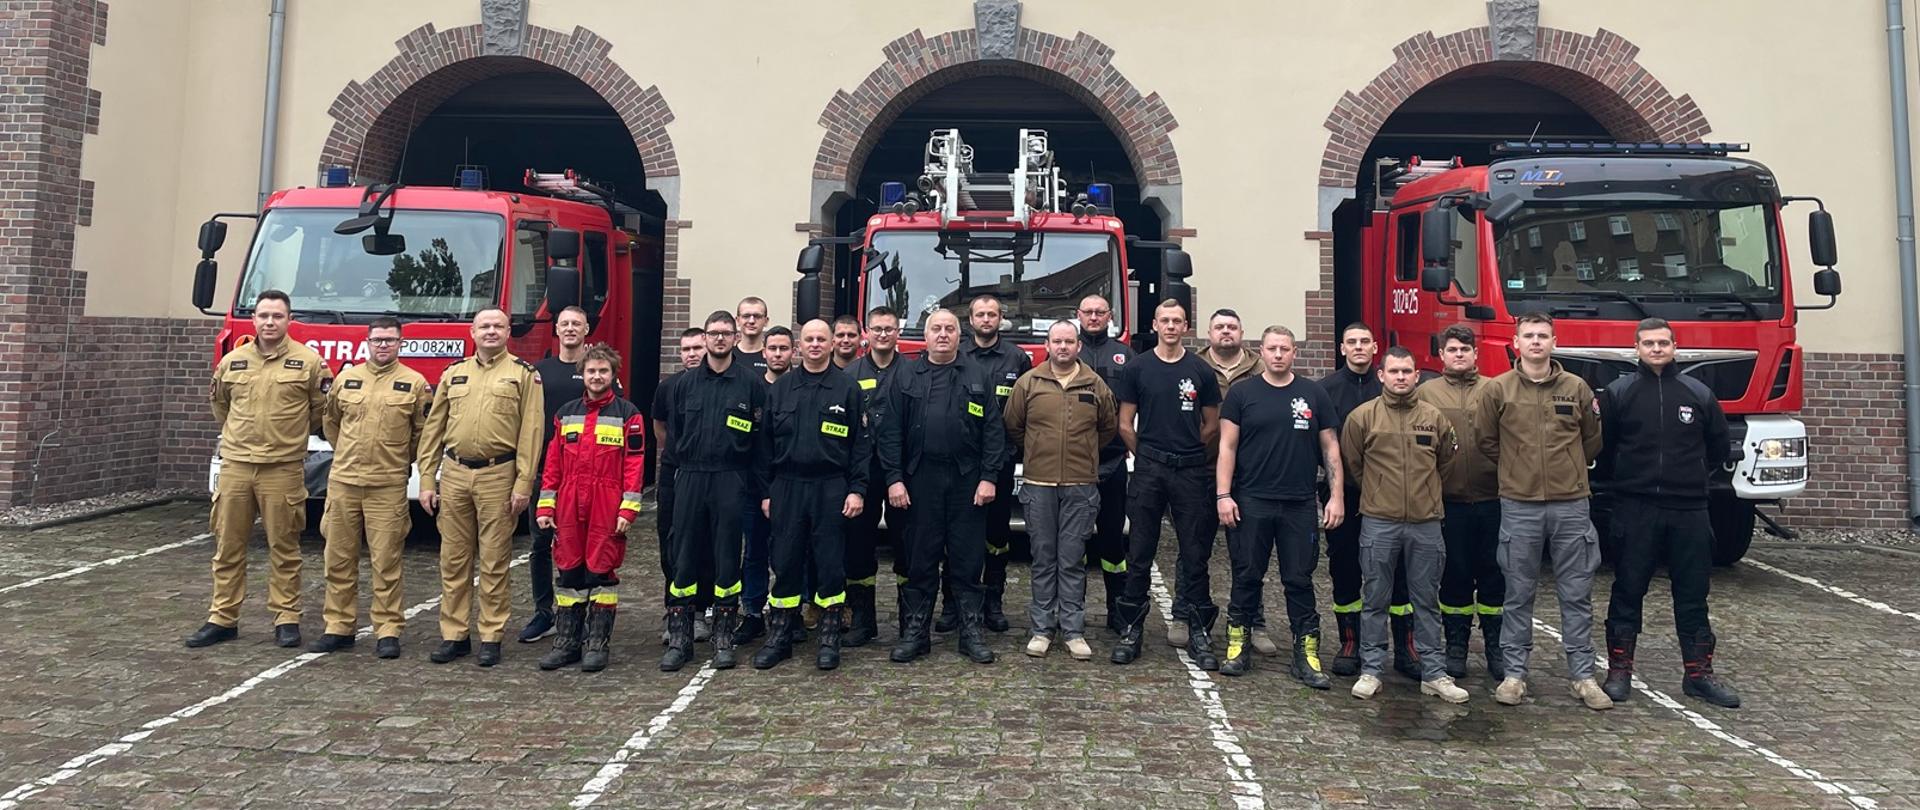 zdjęcie grupowe strażaków zrobione na zakończenie Szkolenia dowódców dla strażaków OSP